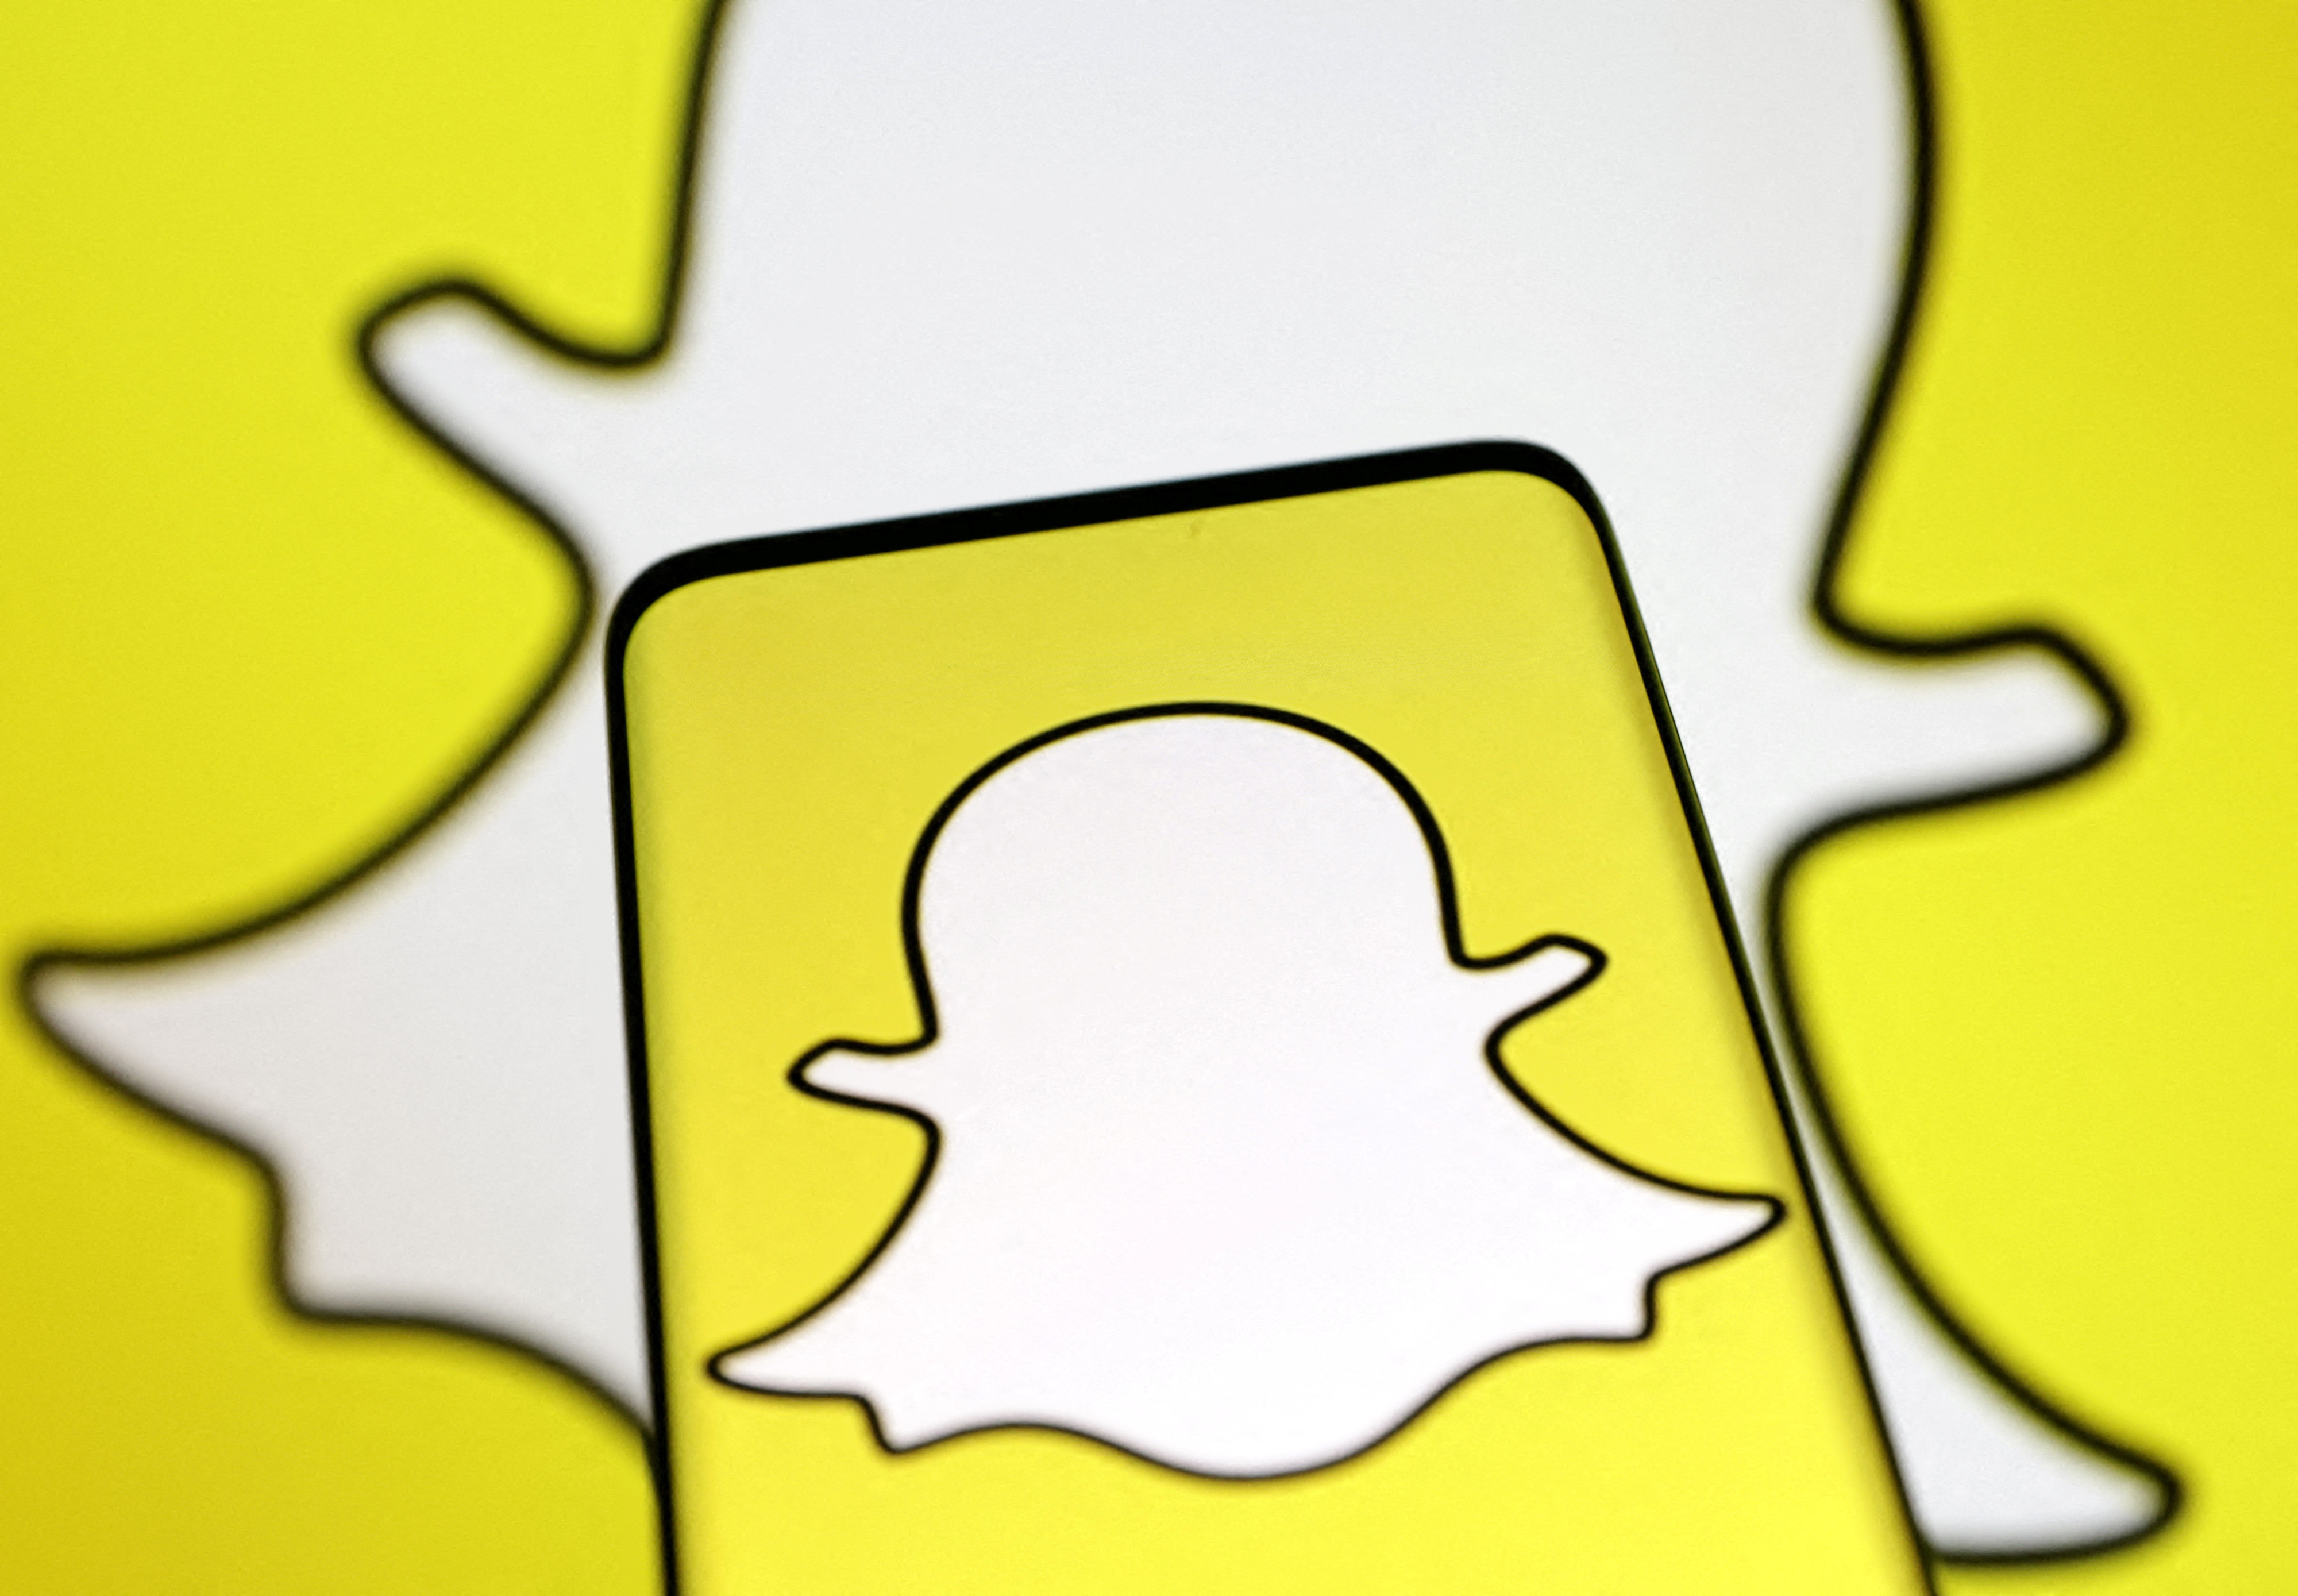 Illustration shows Snapchat logo